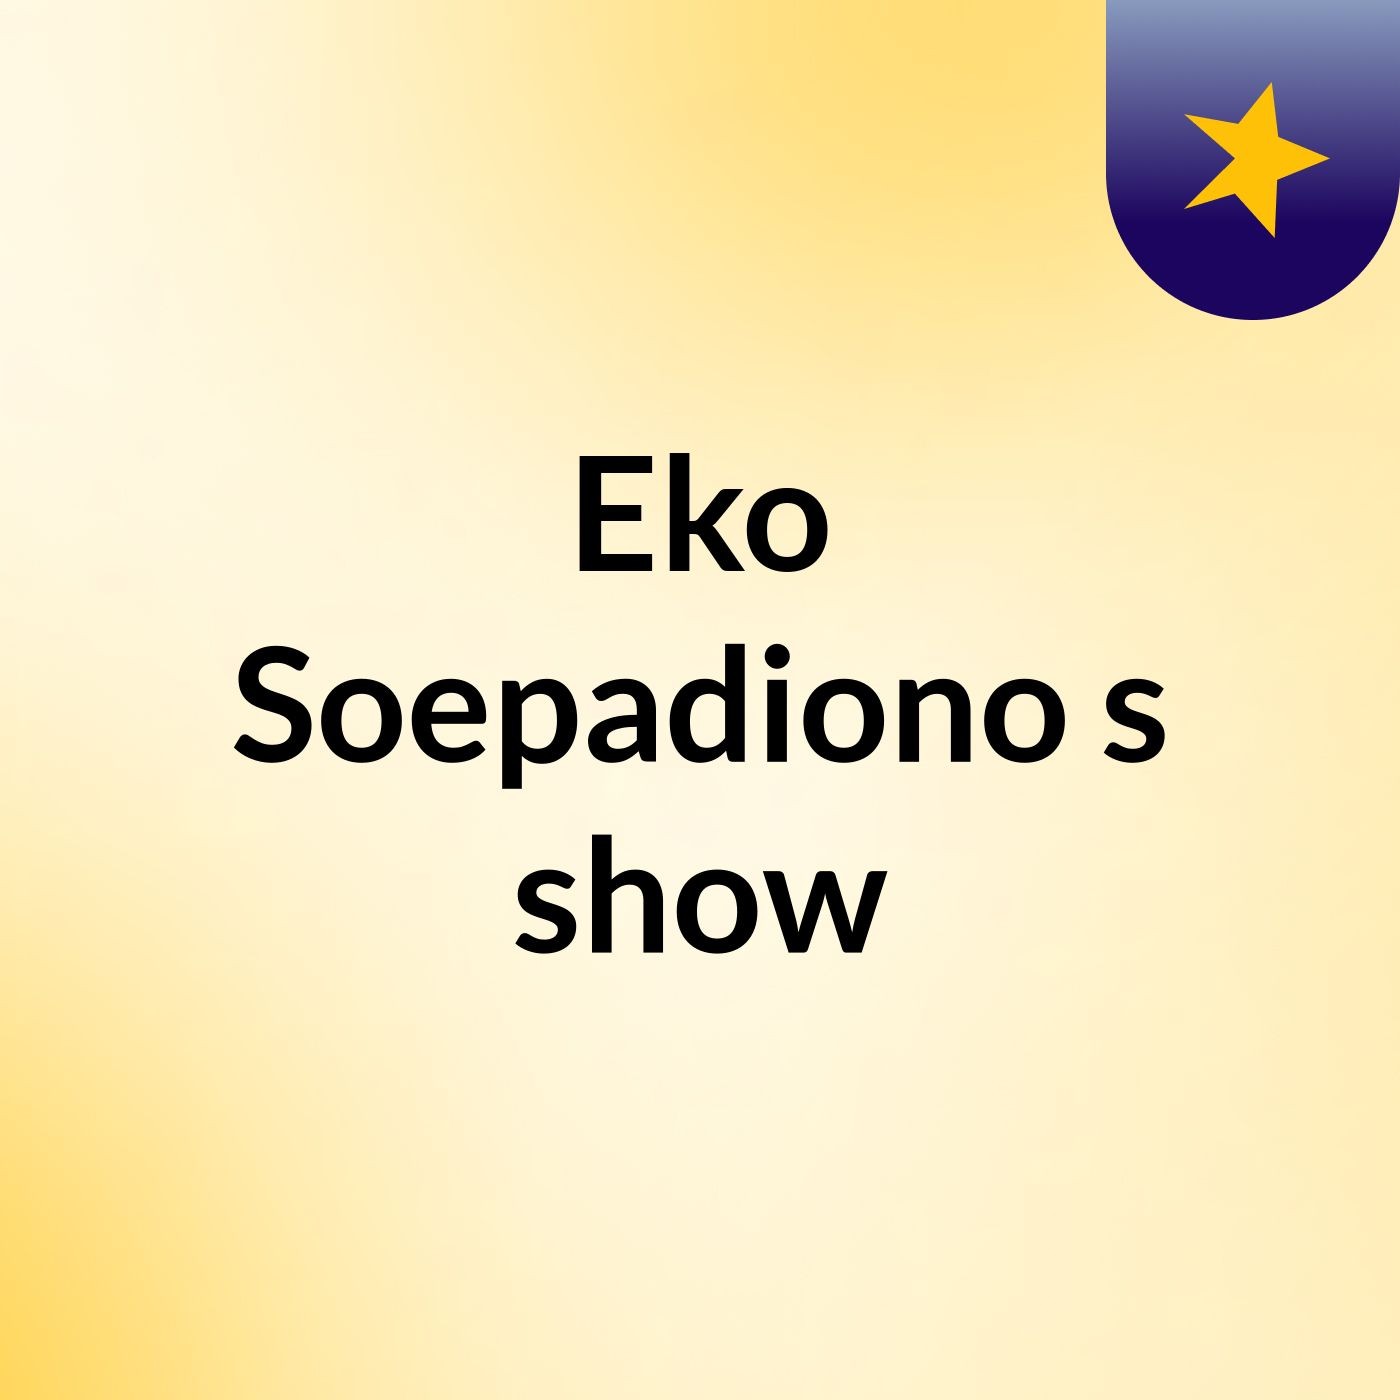 Eko Soepadiono's show